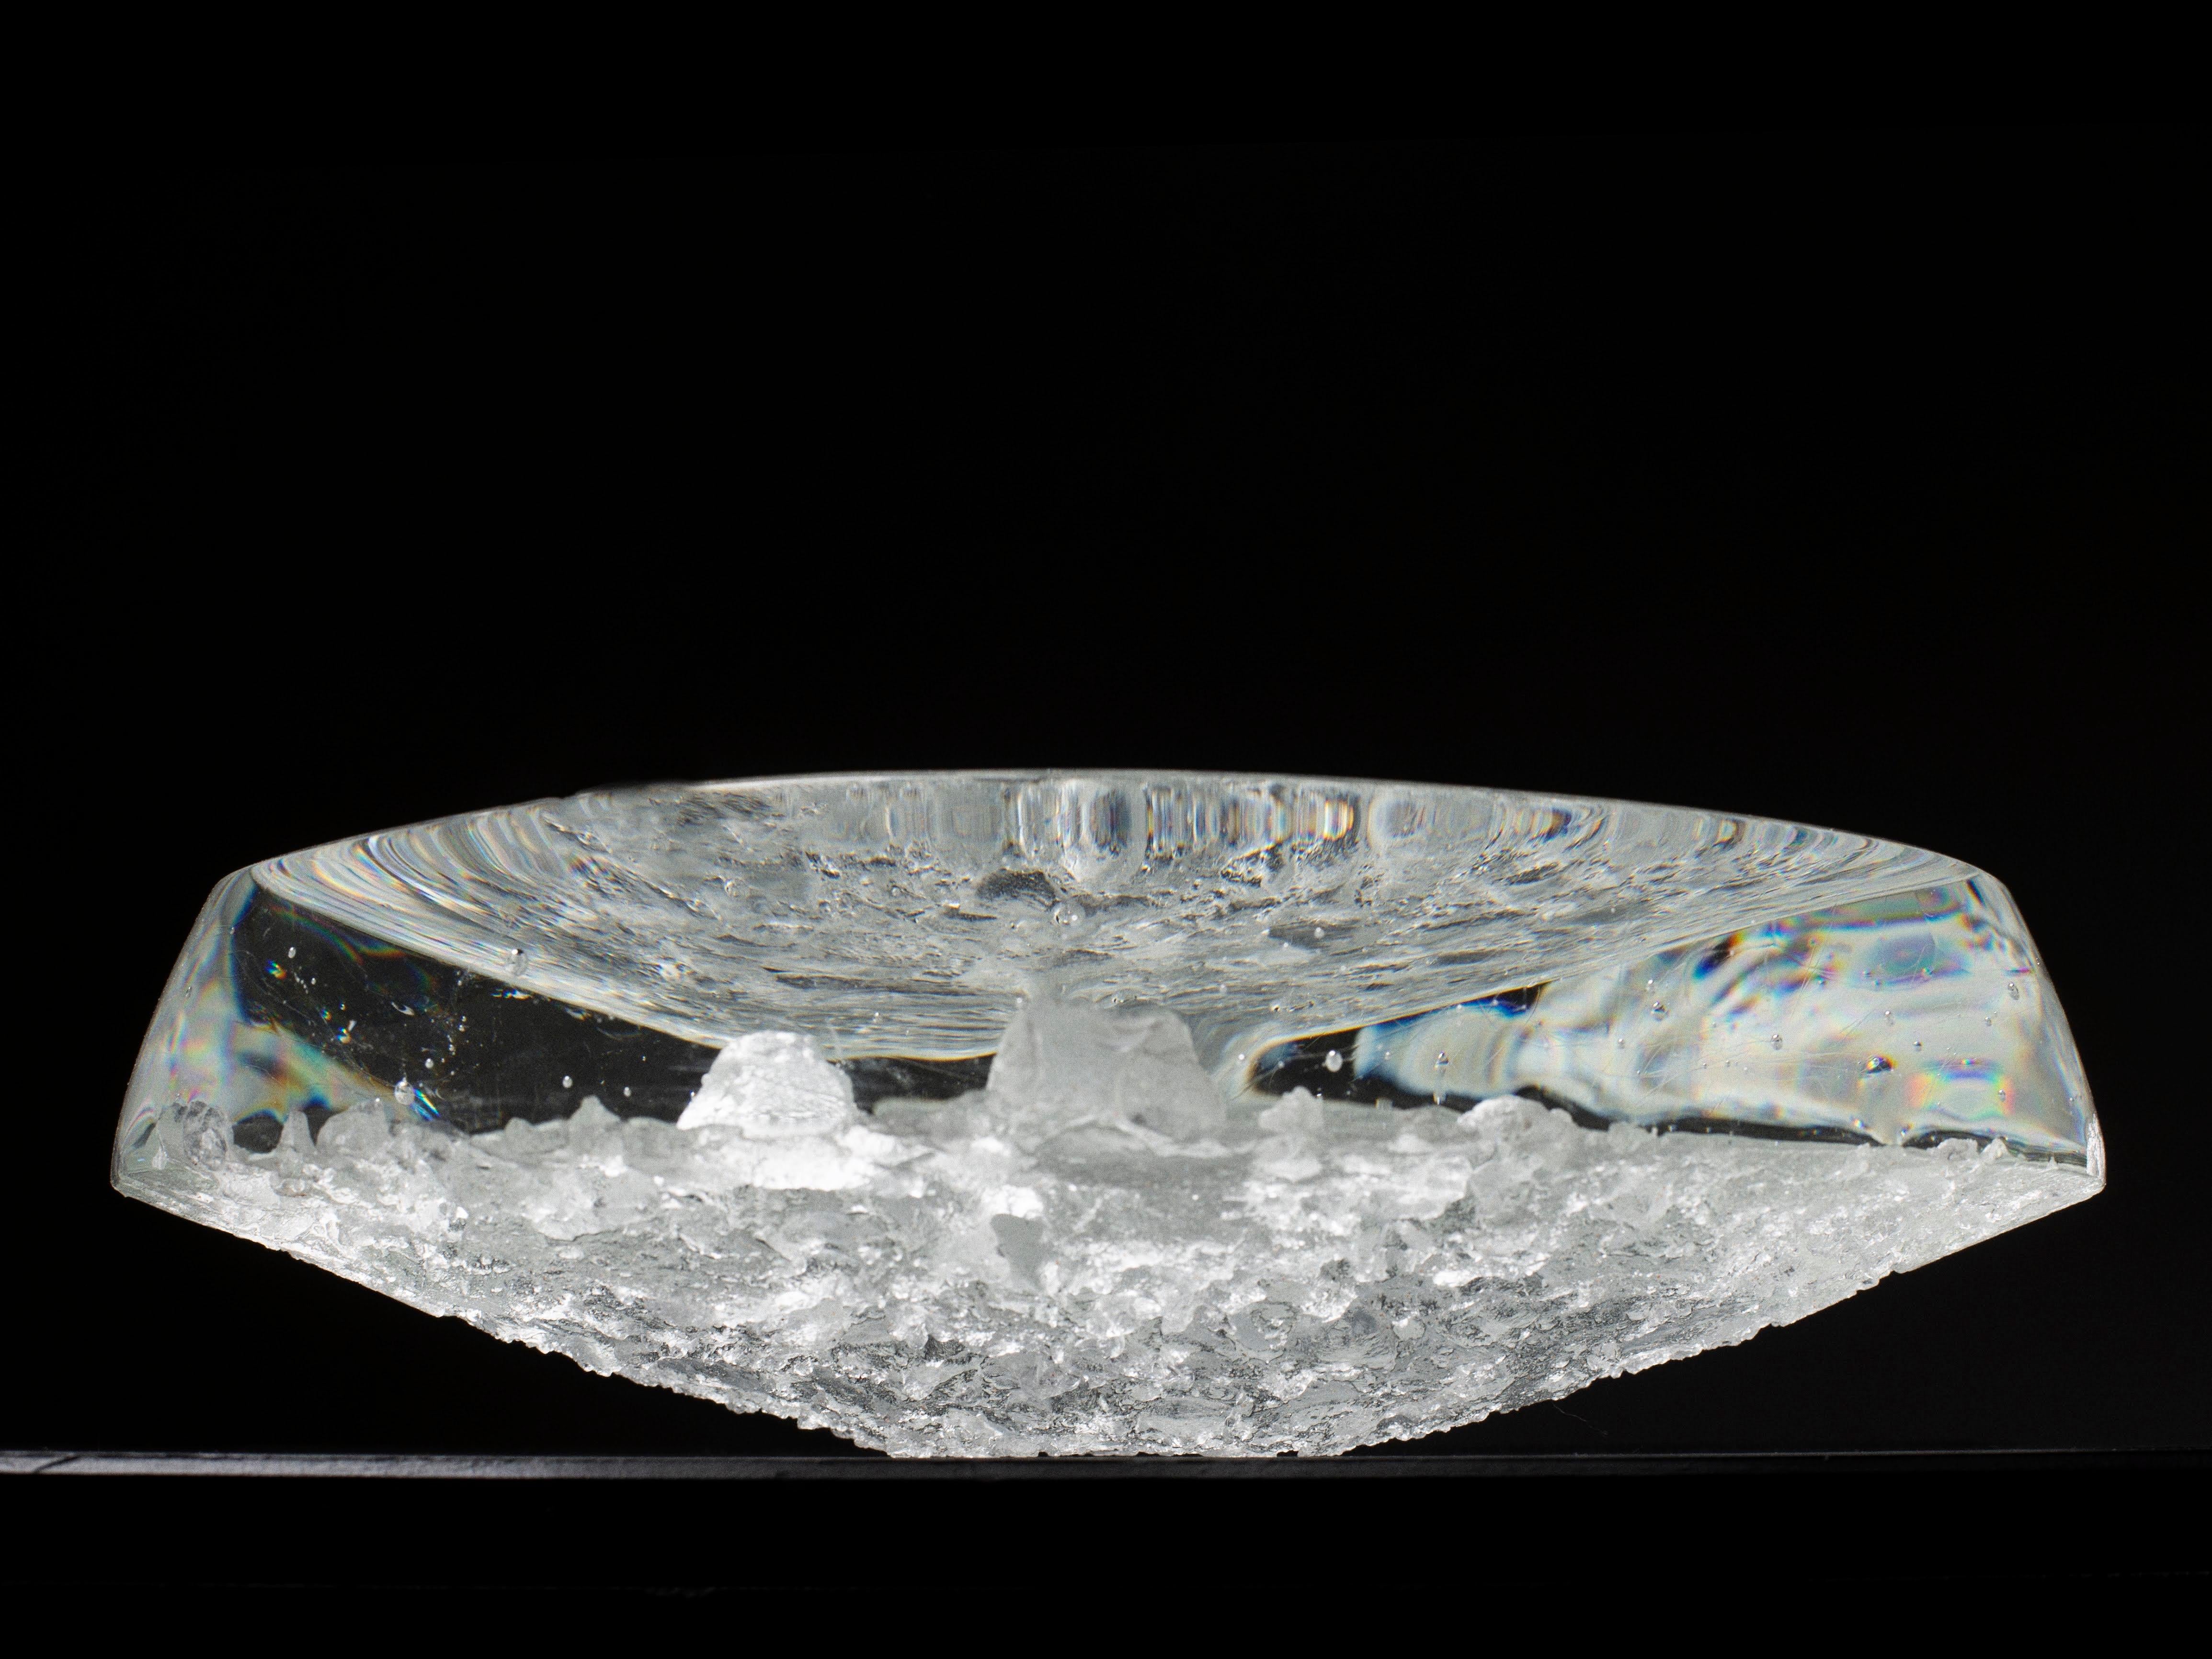 Runder Yugen-Teller von Matthieu Gicquel
Abmessungen: Ø 36 x H 5 cm.
MATERIALIEN: Optisches Glas.
Gewicht: 12 kg.

Jedes Stück ist nummeriert. Bitte kontaktieren Sie uns.

Lob für den Augenblick
Das Licht scheint durch das Glas. Die Details werden